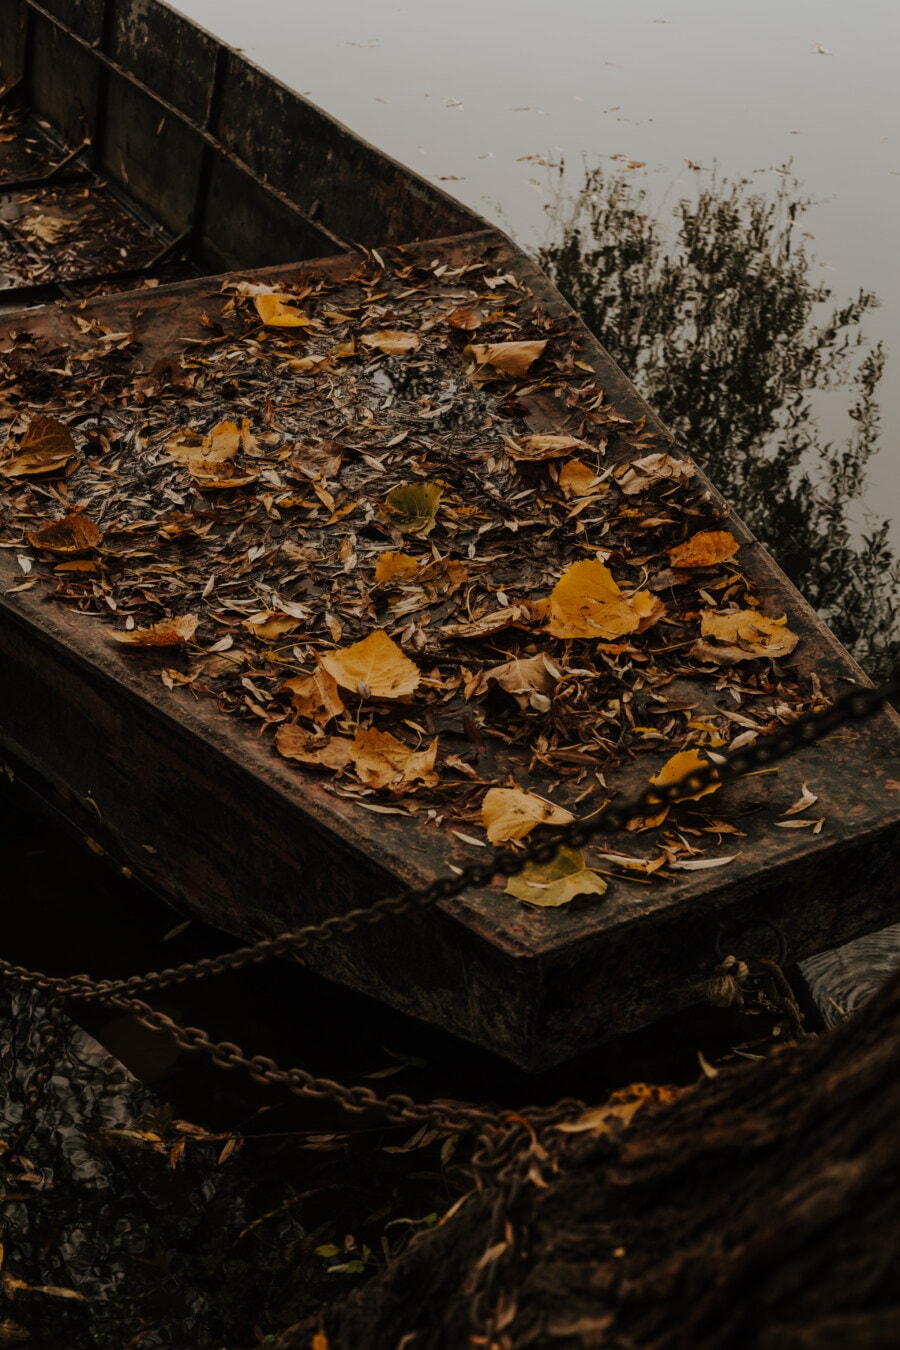 rivierboot, boot, verlaten, braakliggende, verval, wrak, herfst seizoen, gele bladeren, hout, licht